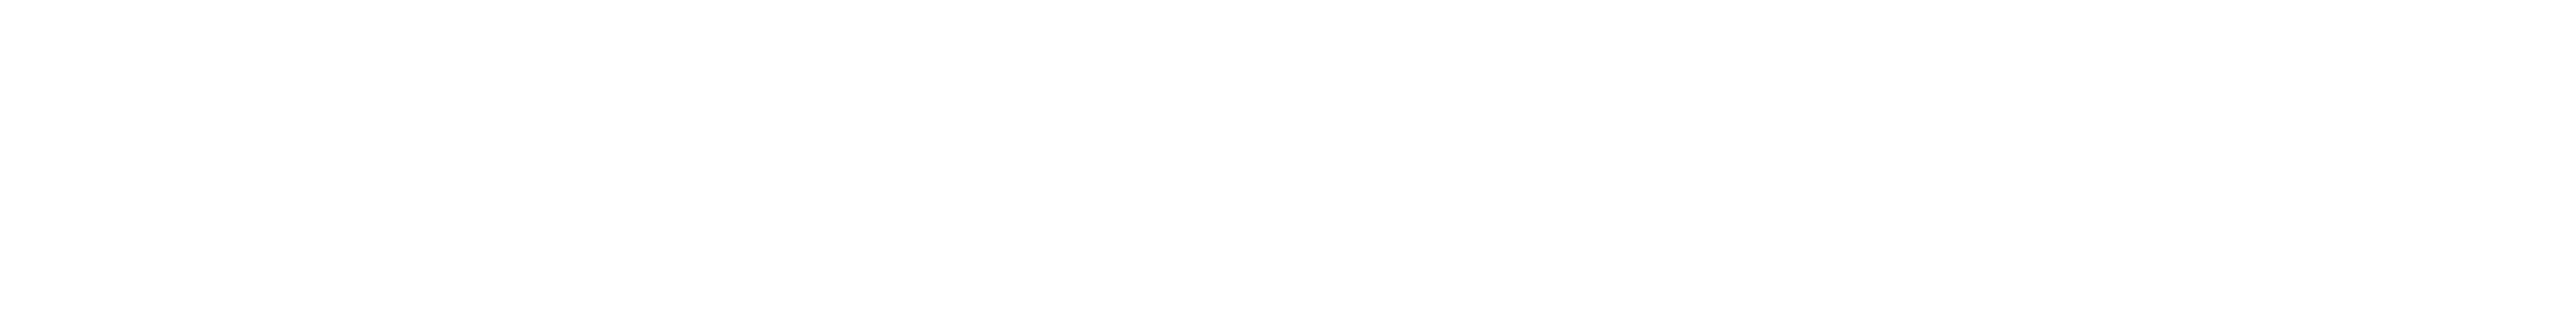 Sozap logo grand pour les fonds sombres (PNG transparent)